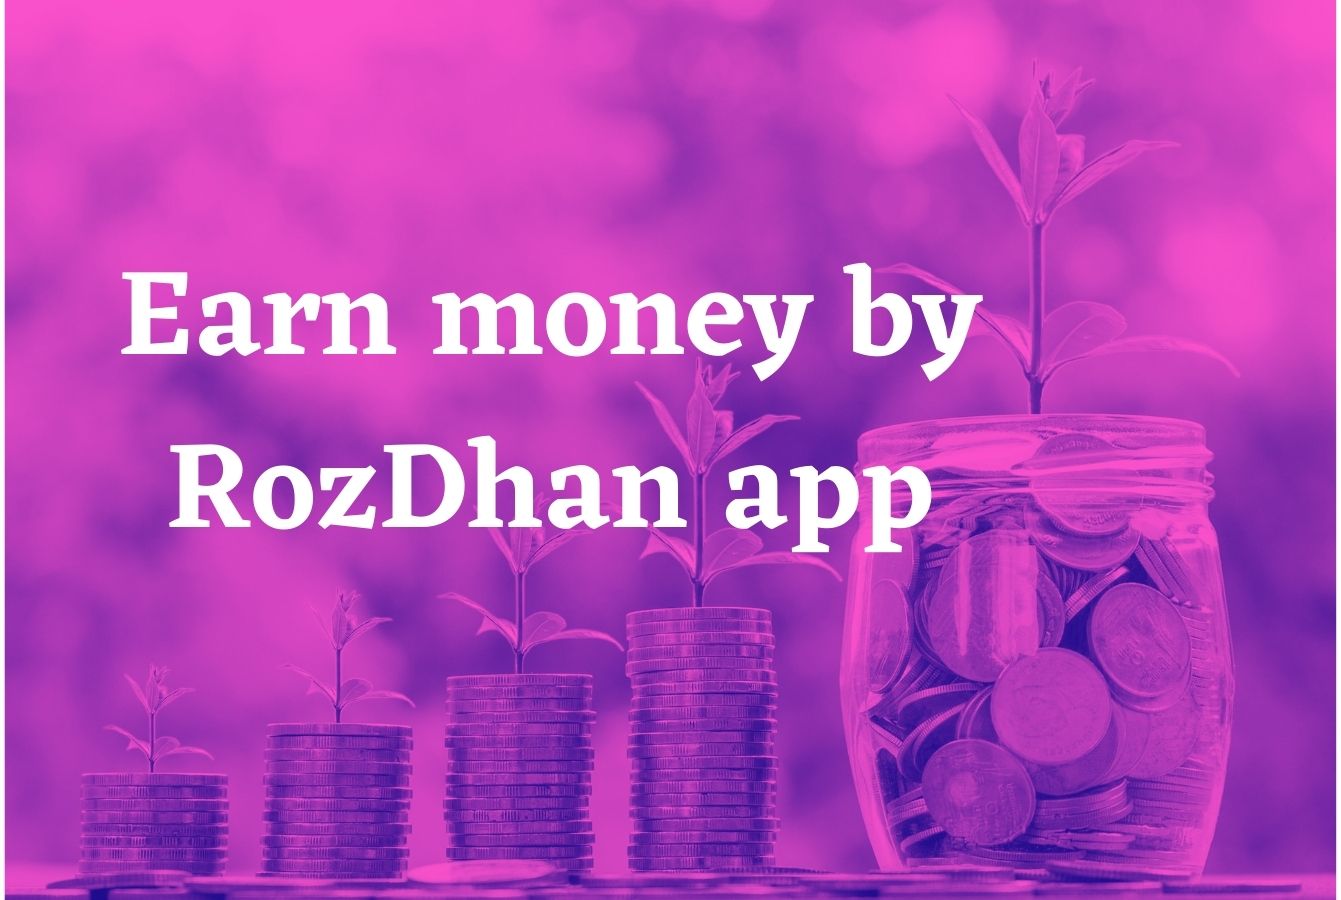 public/uploads/2021/05/Earn-money-by-RozDhan-app.jpg